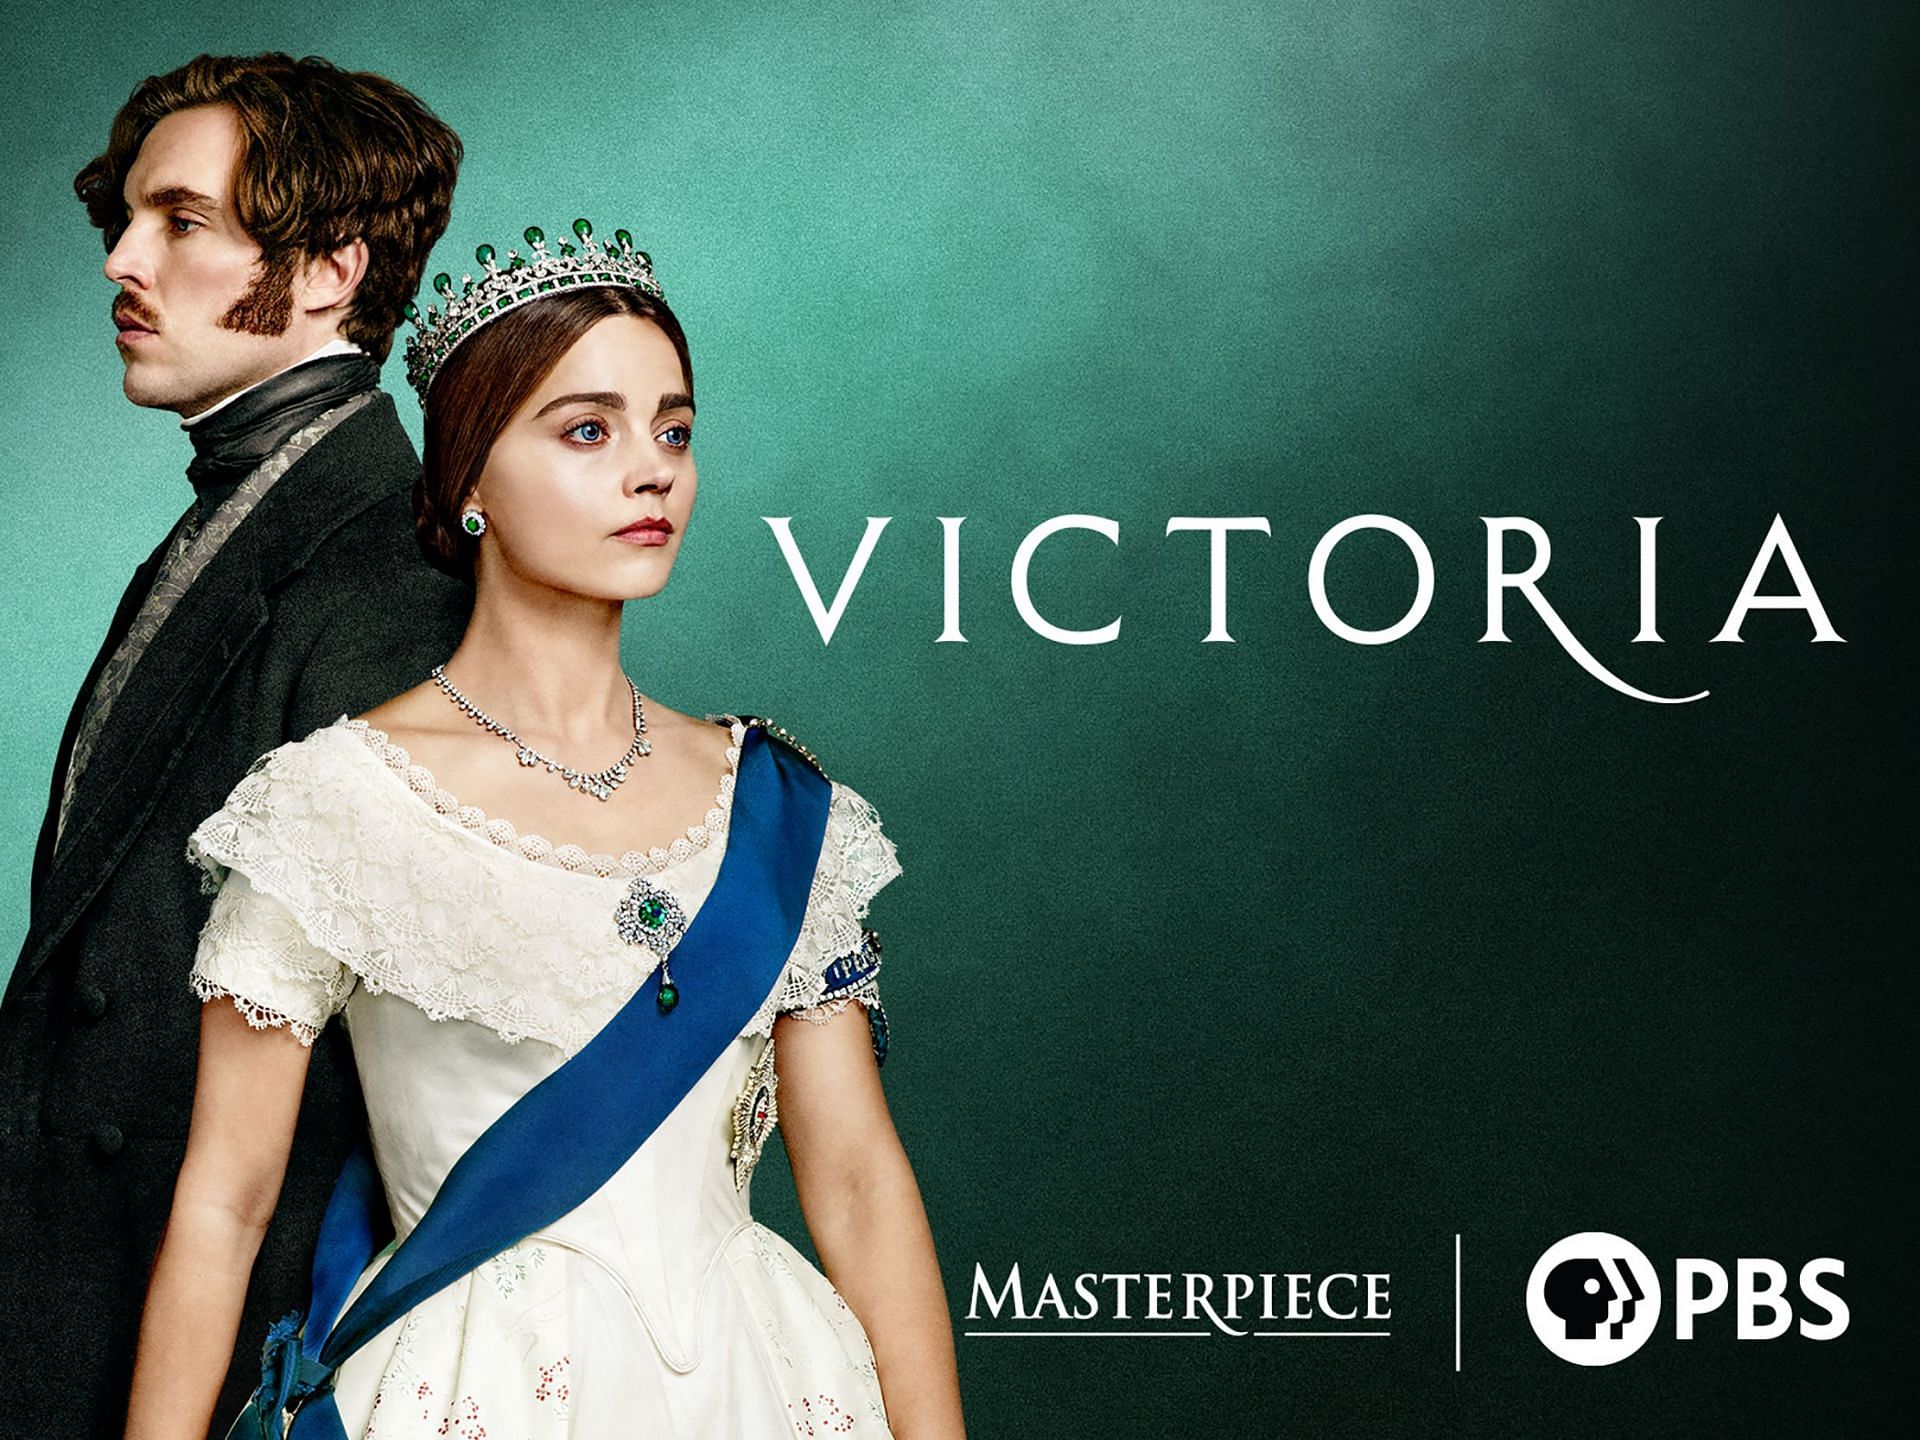 Victoria by Masterpiece (Image via PBS)